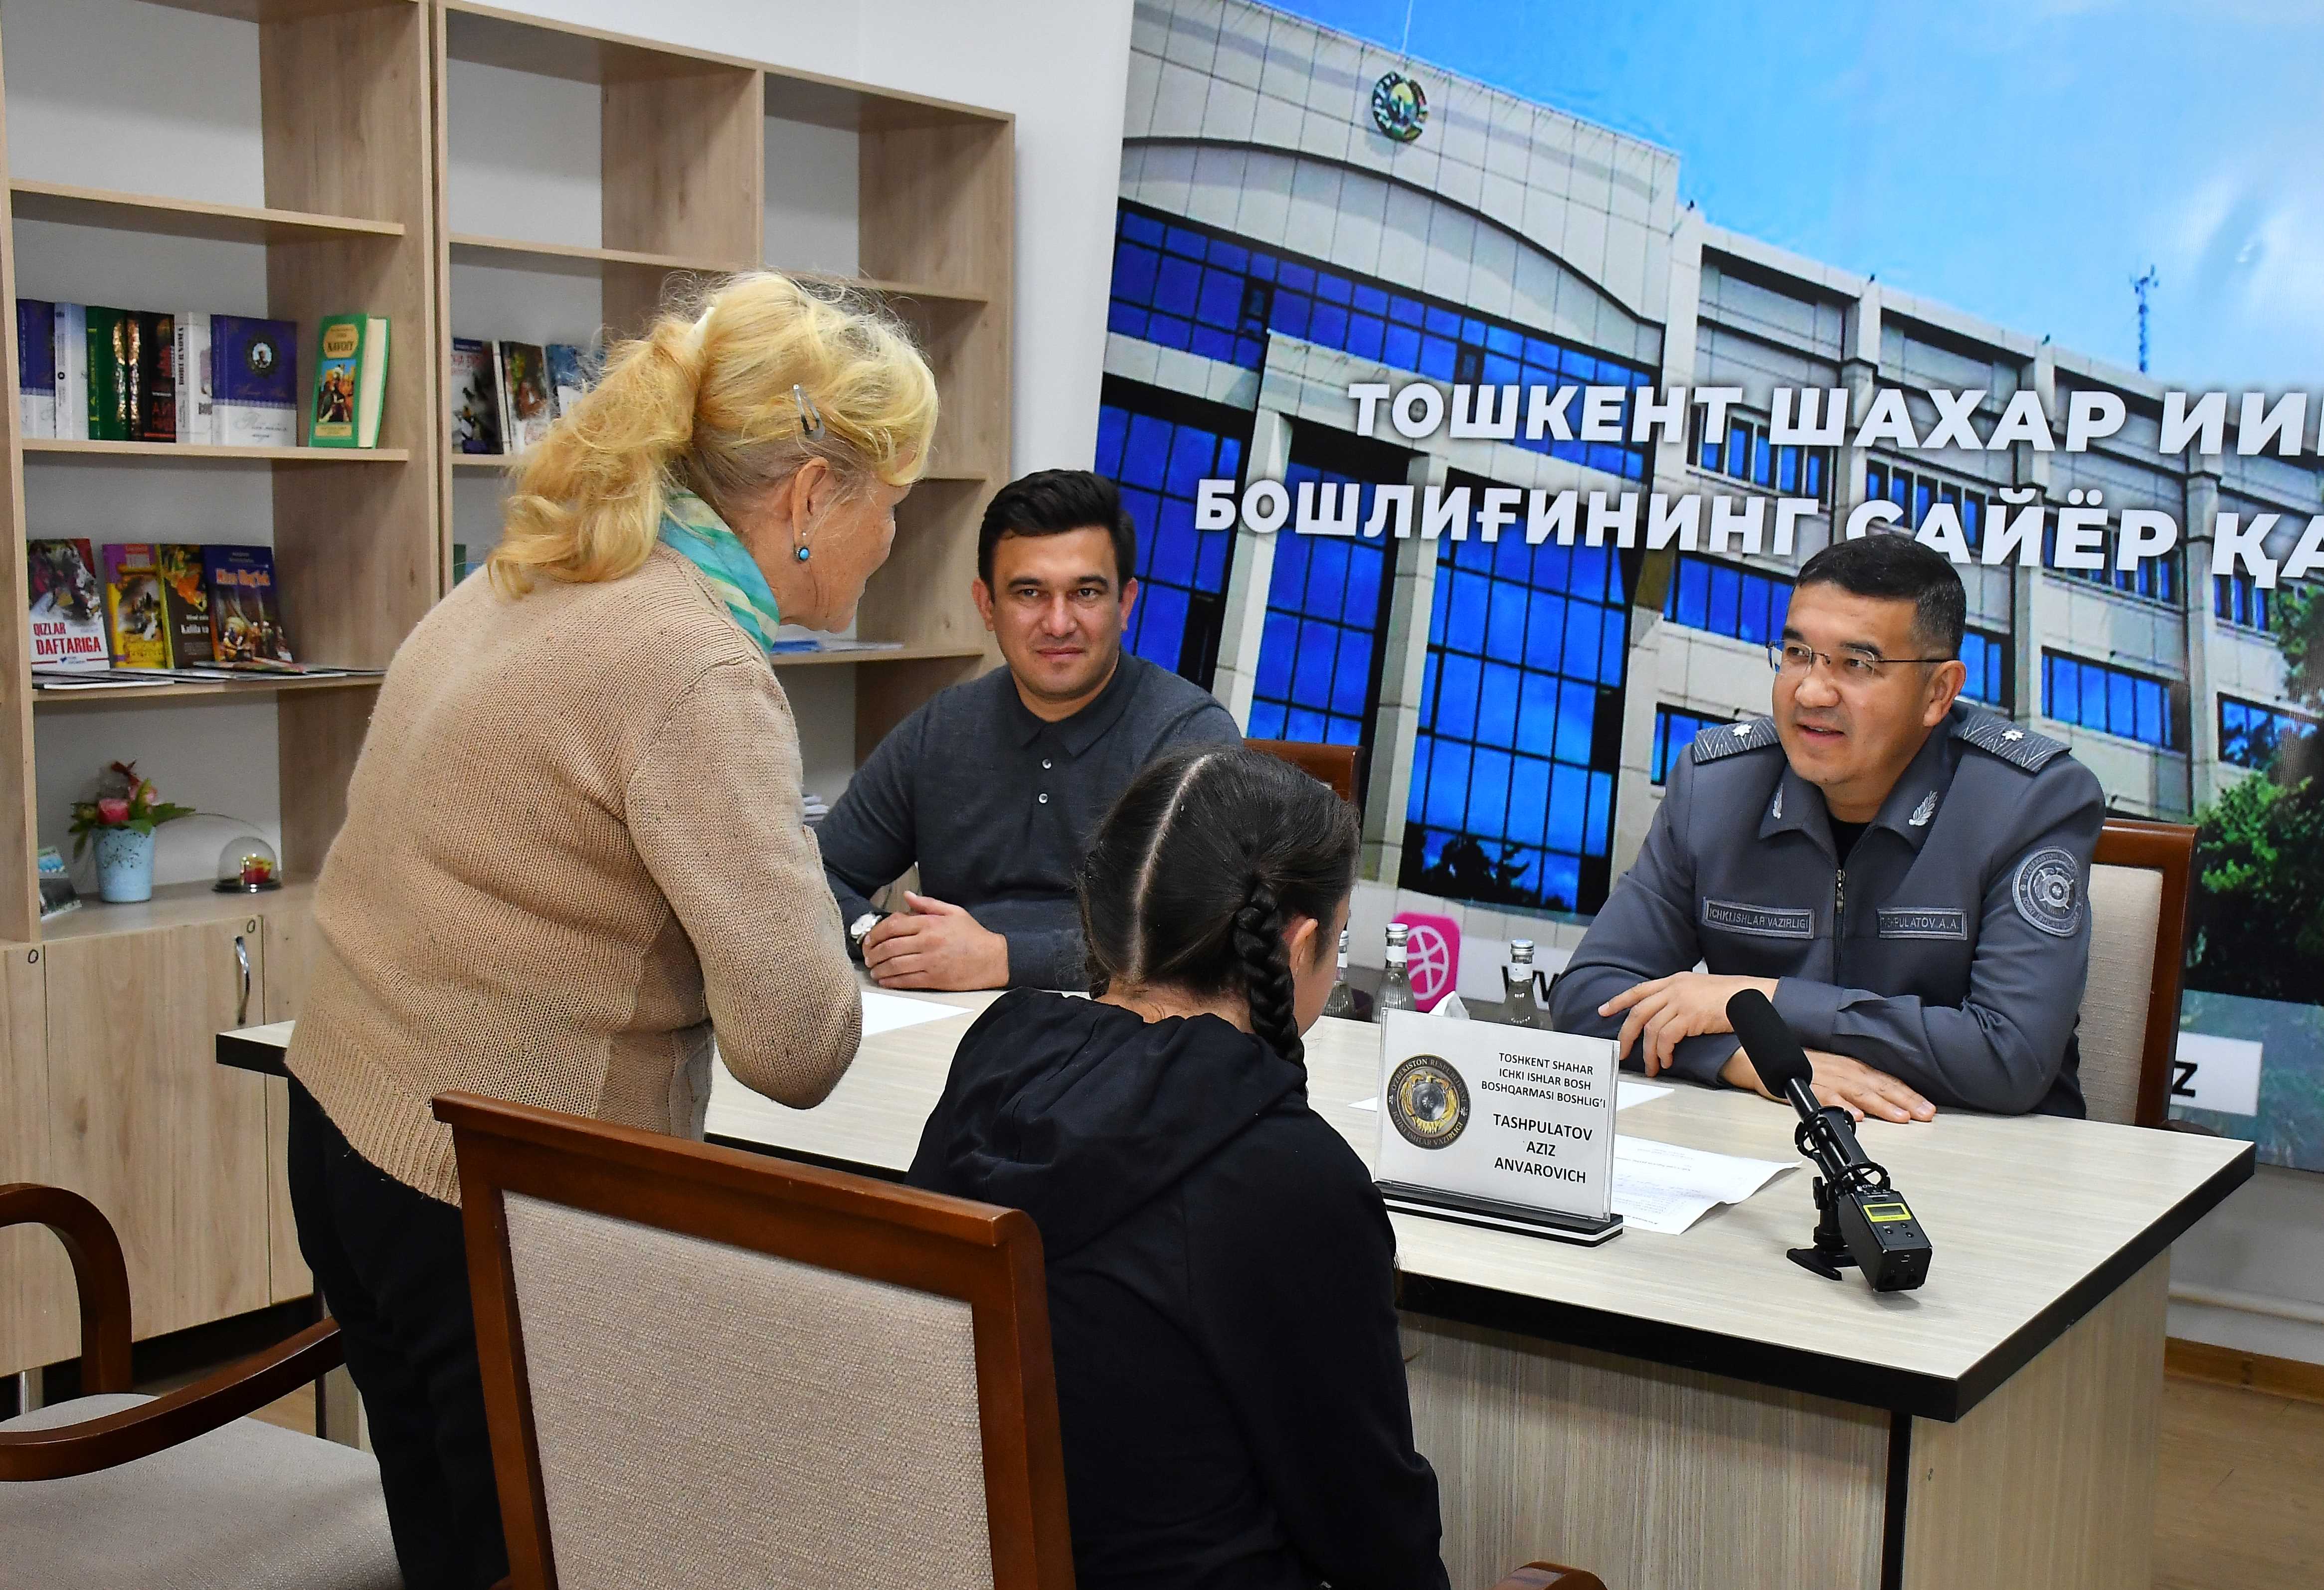 Очередной прием граждан начальника ГУВД Ташкента в Янгихаётском районе  